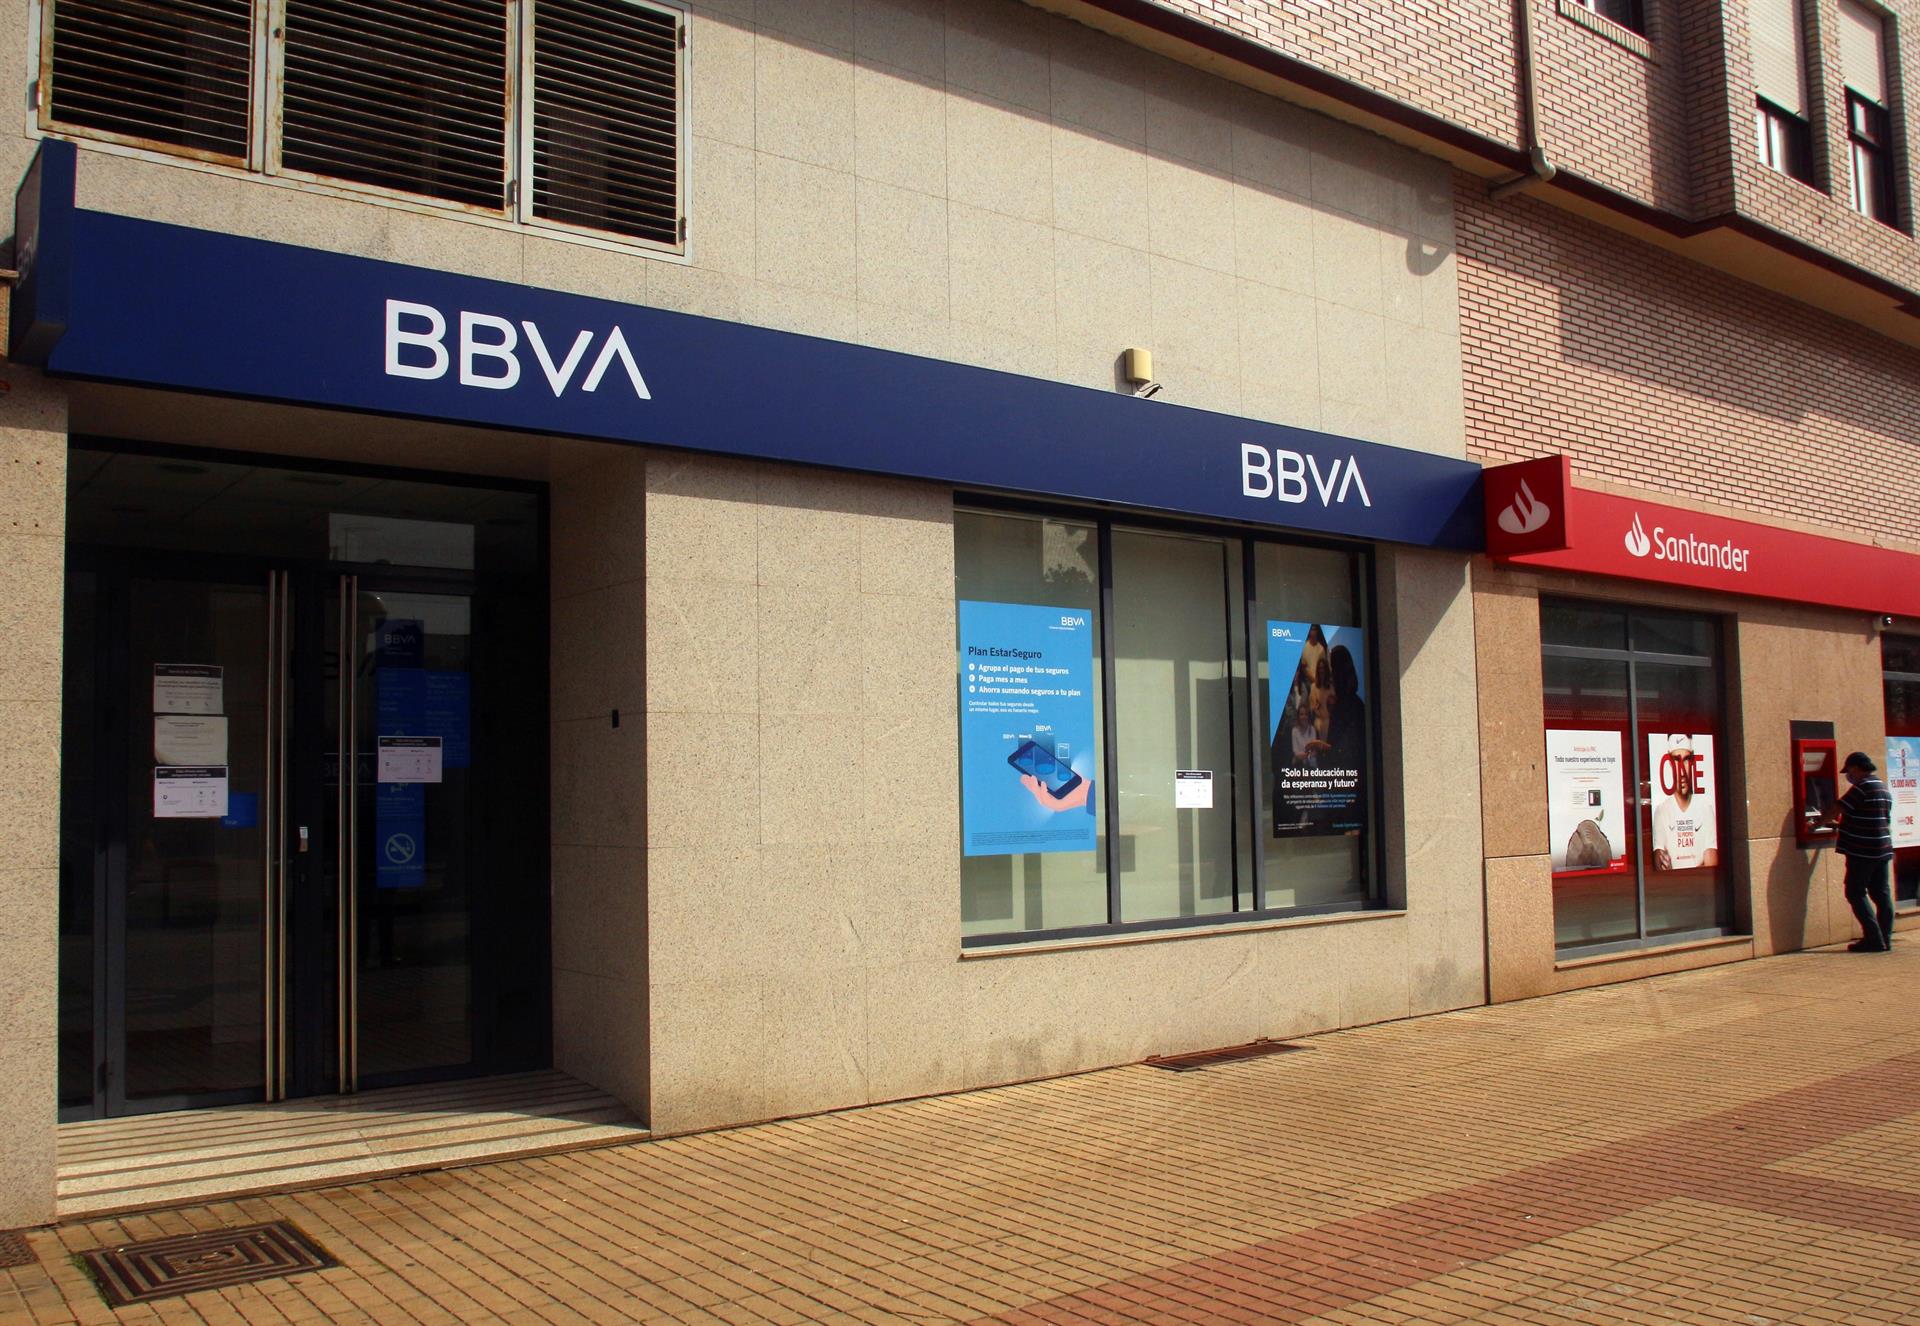 Fachada de la sucursal del banco BBVA y Santander.